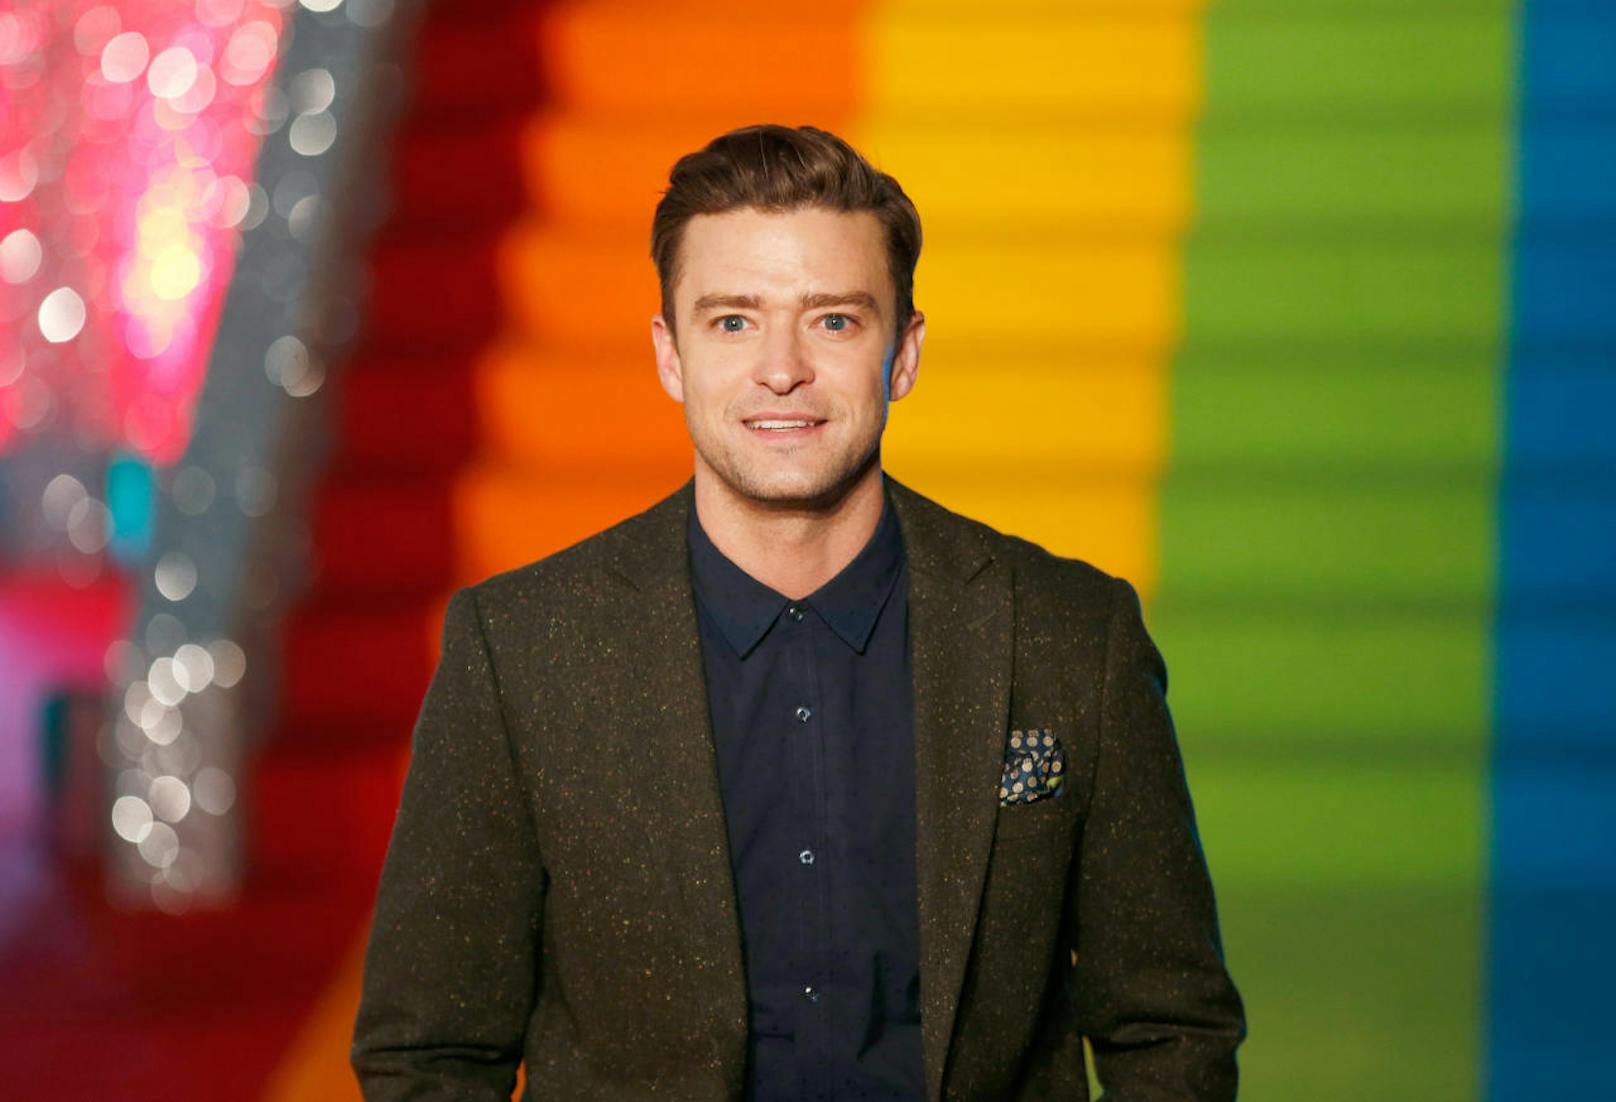 In einem Interview wurde bekannt, dass Justin Timberlake sowohl an ADHS als auch an einer Zwangsstörung leidet.